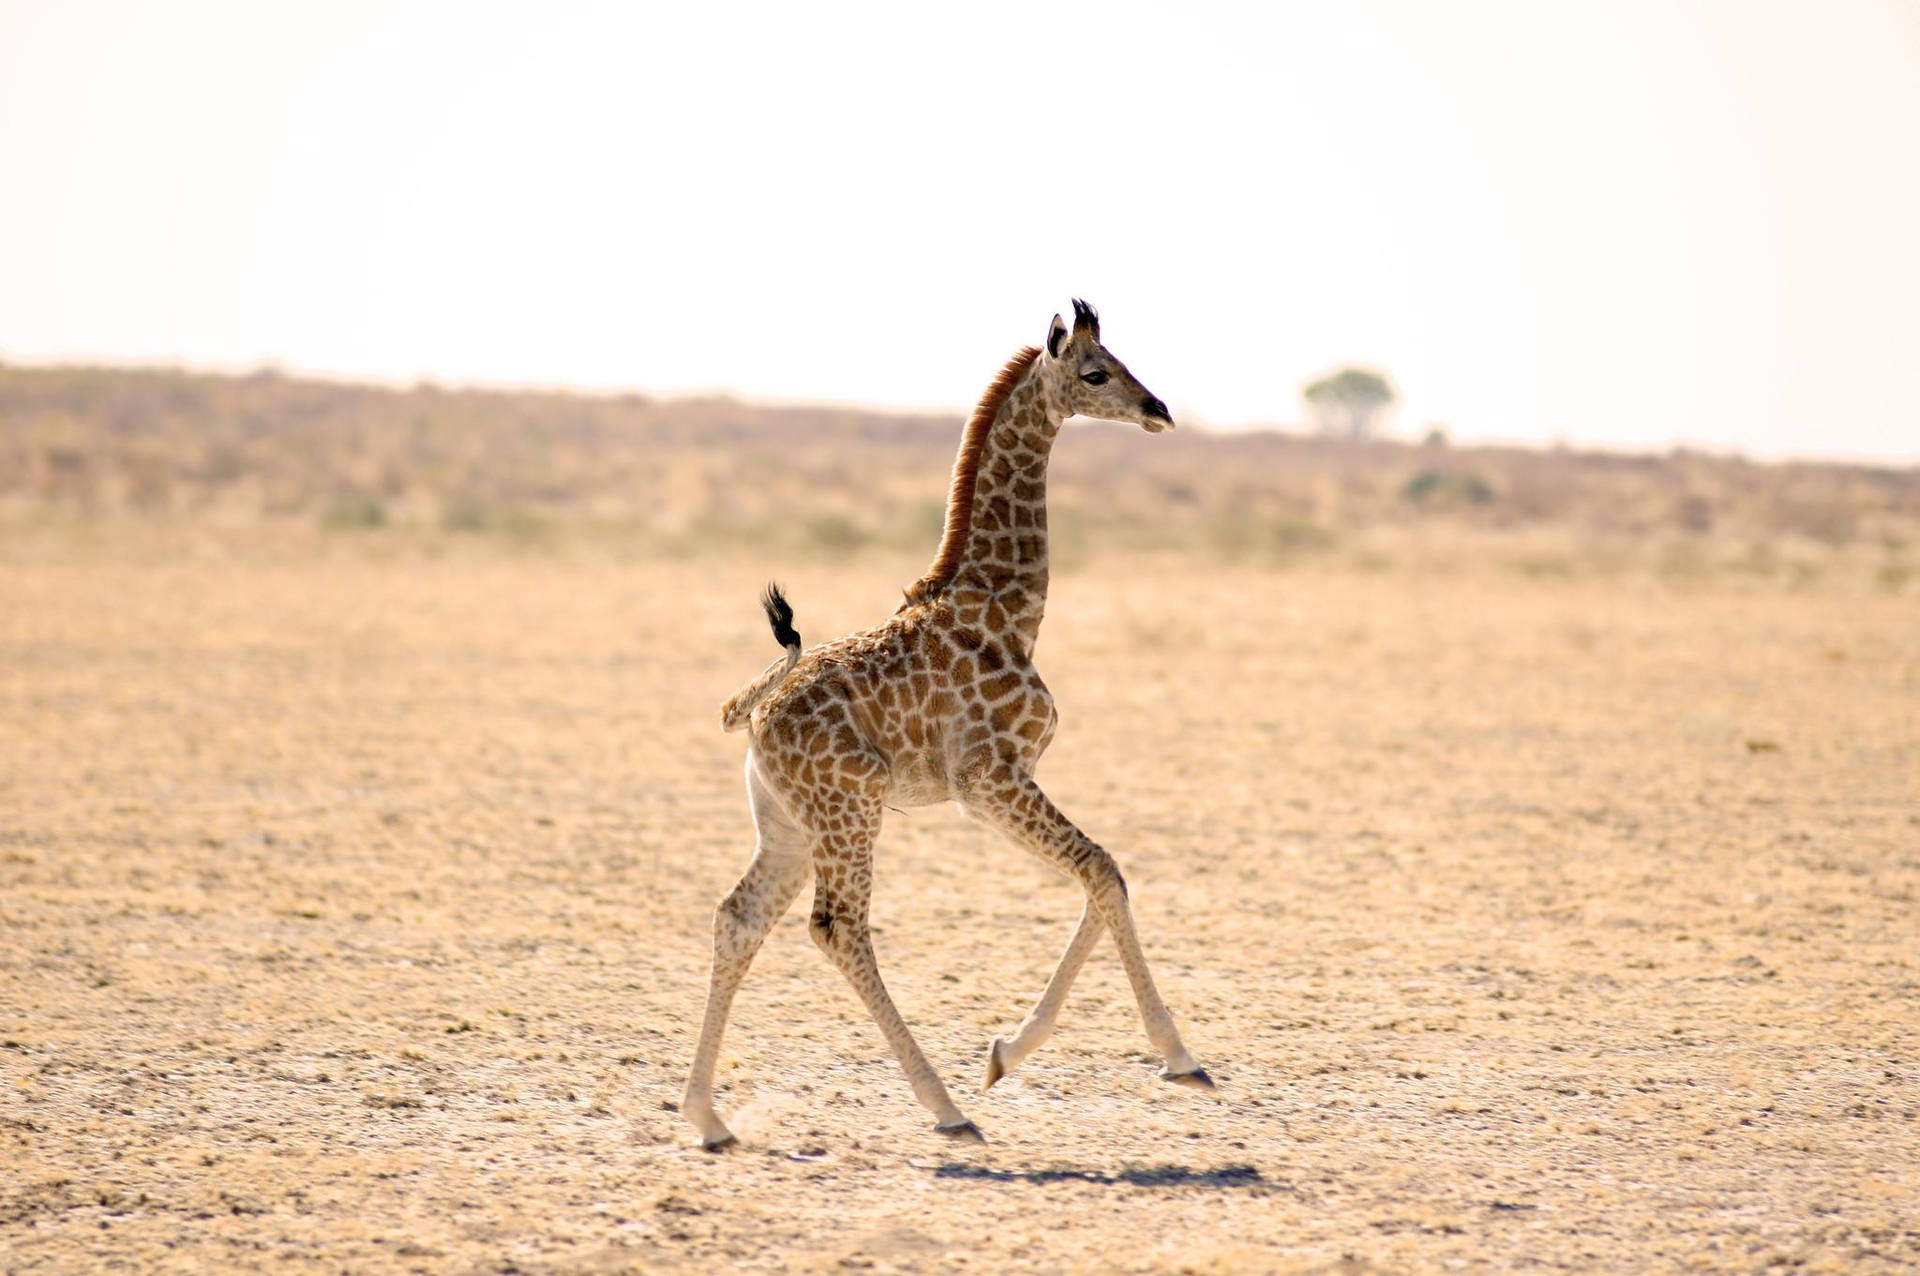 Baby Giraffe In The Field